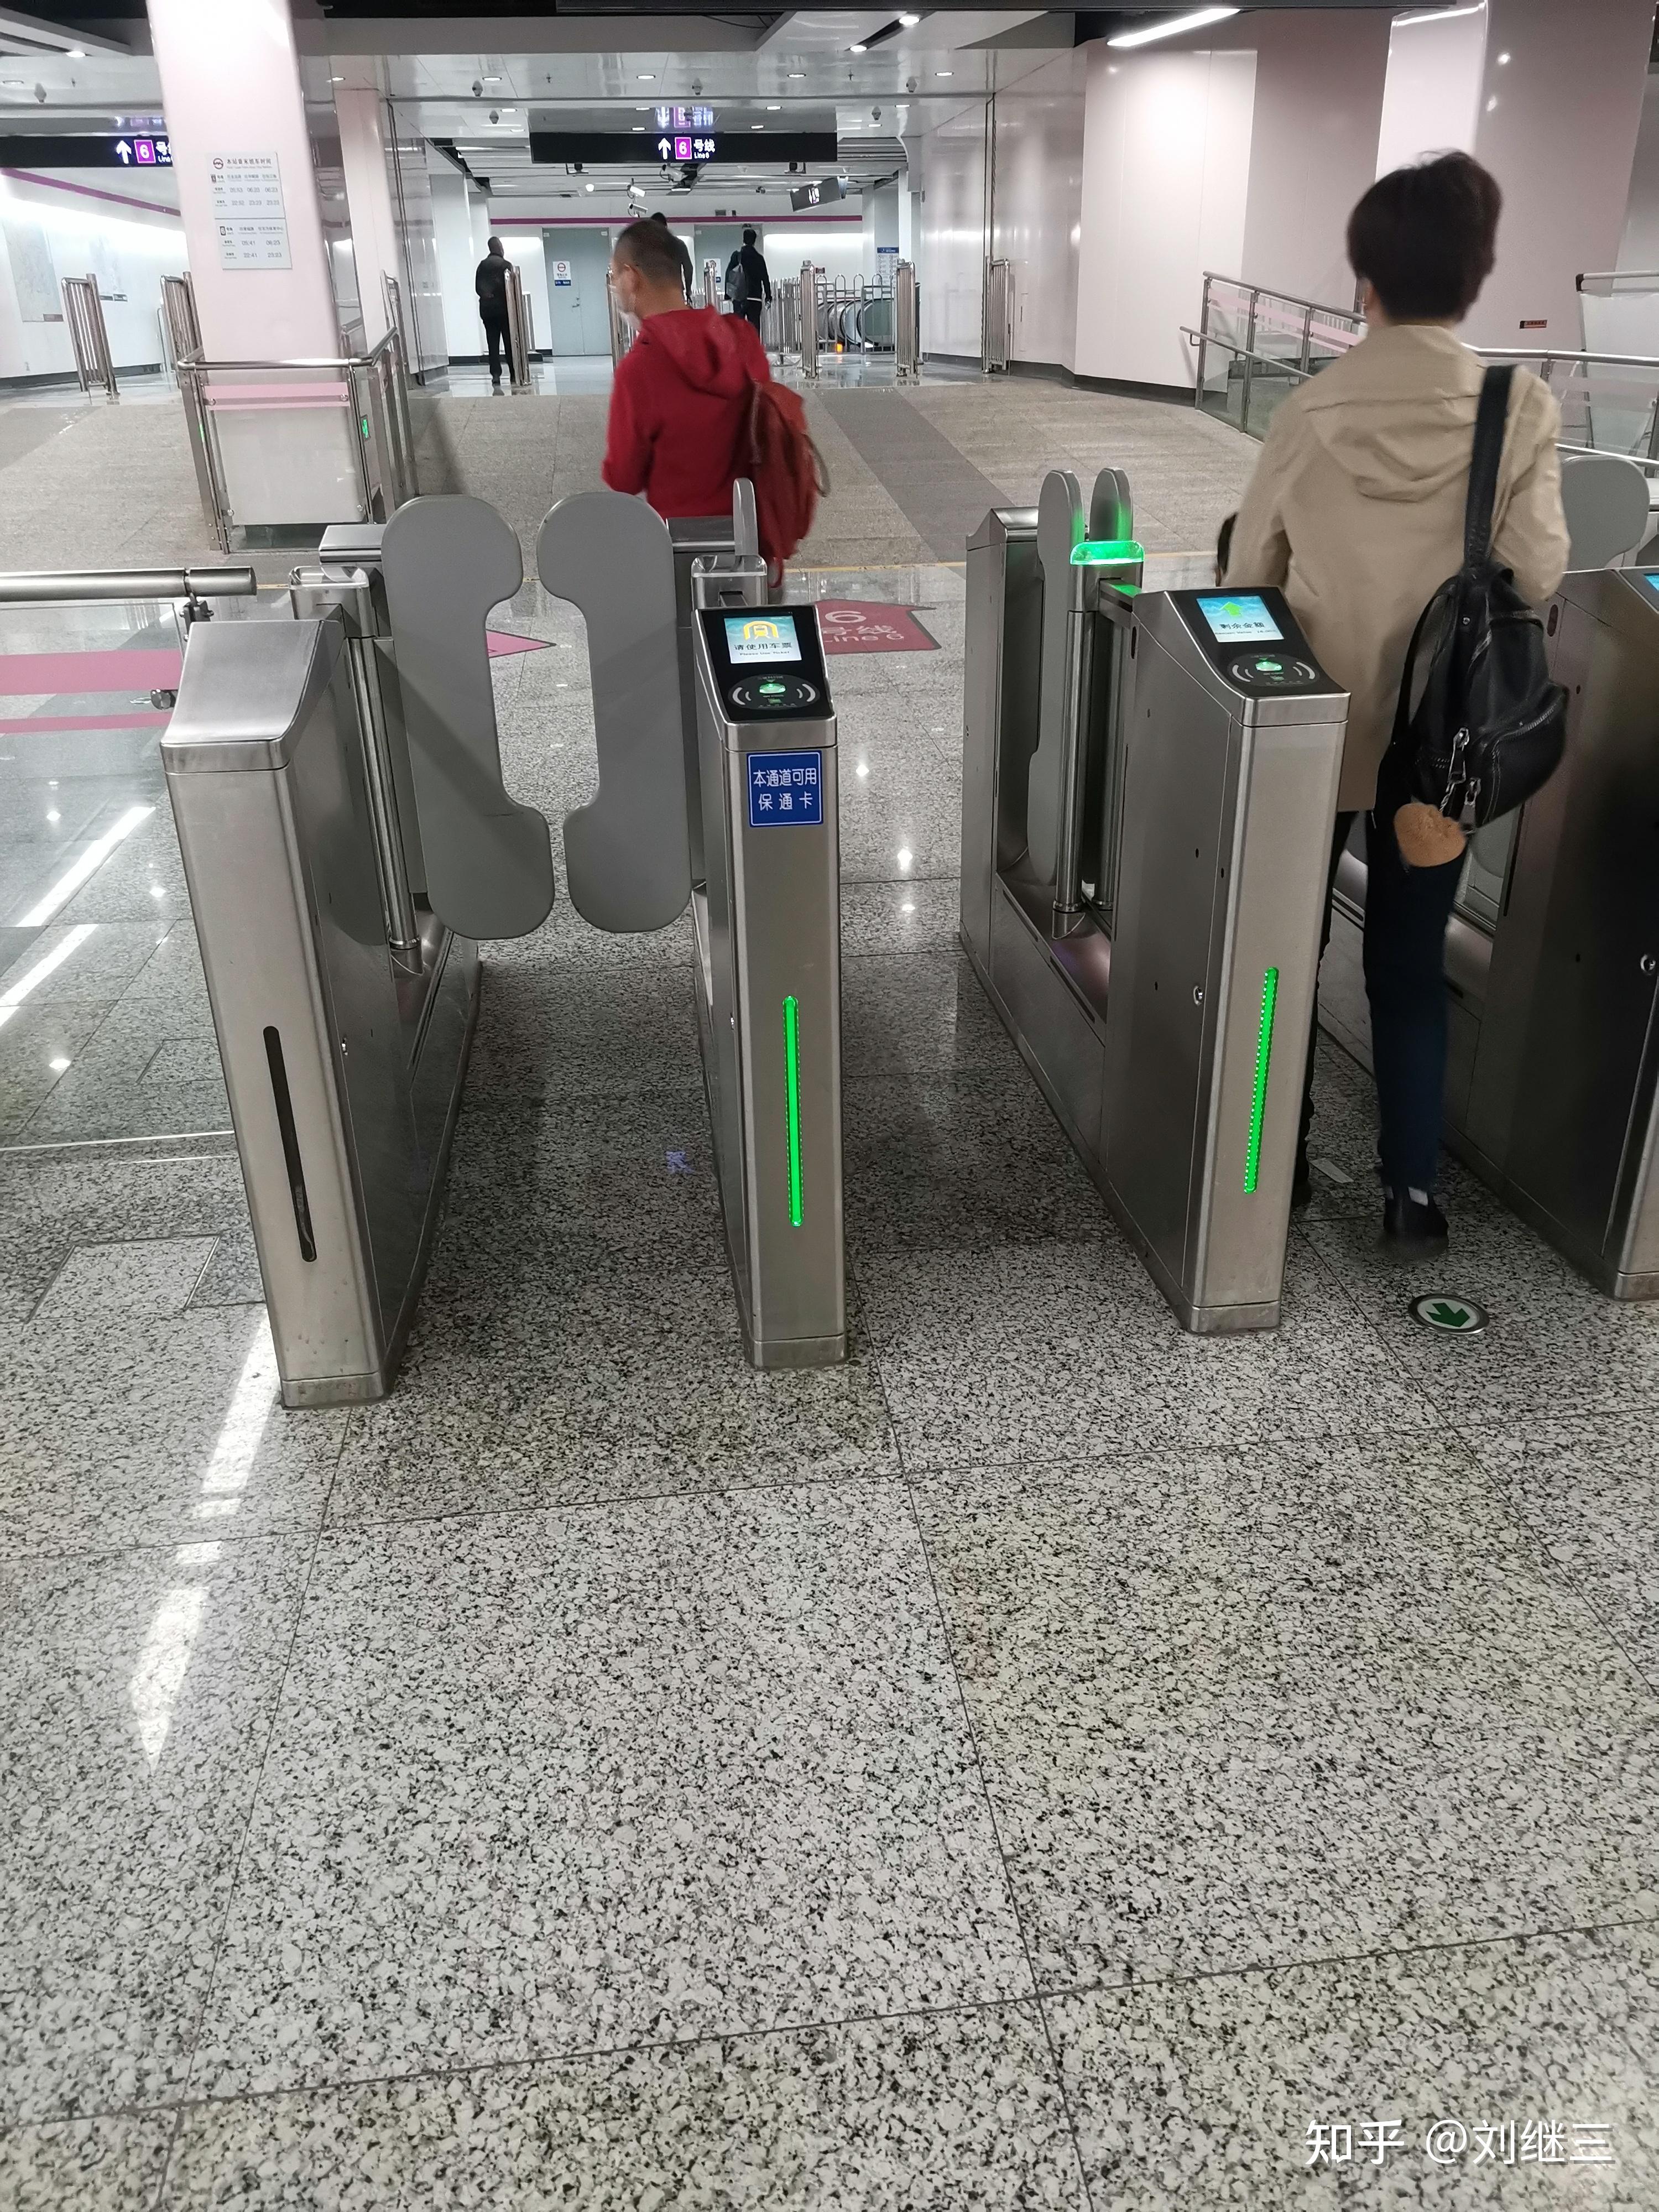 通过乘客的动作及手提物的验票处理技术摆门式自动检票机符合人体工学